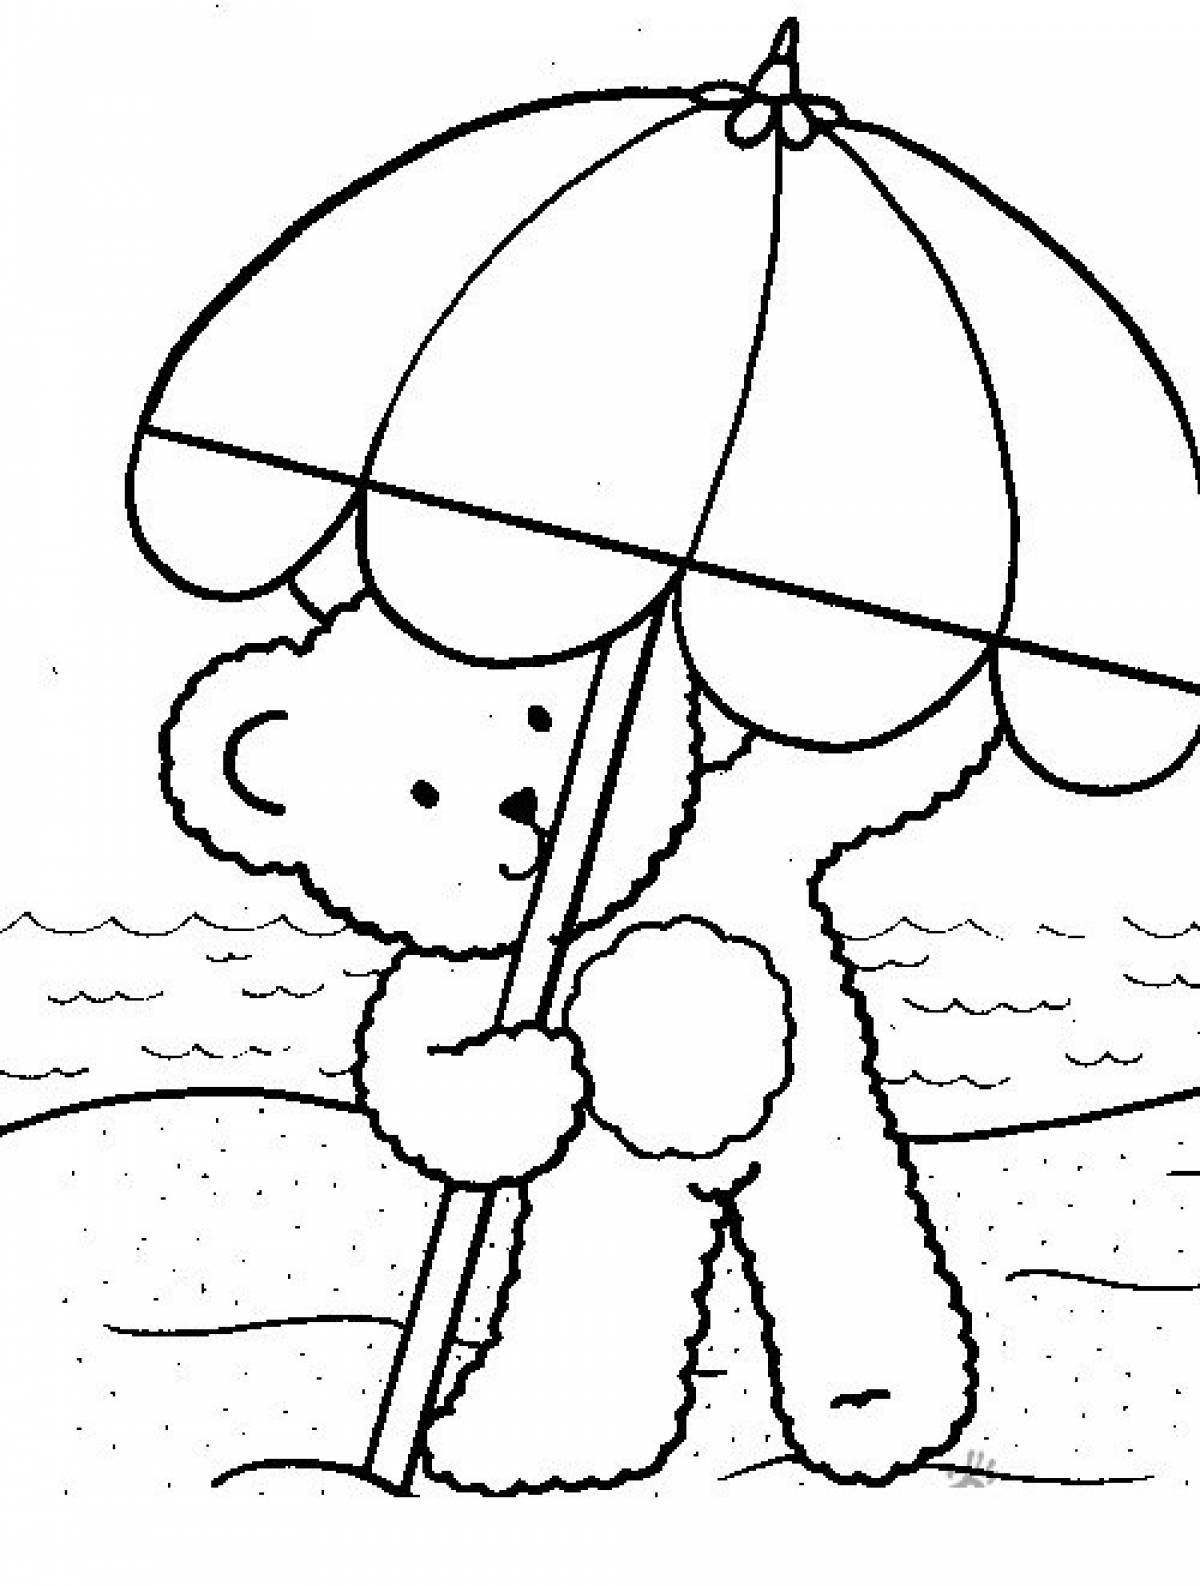 Teddy bear with an umbrella